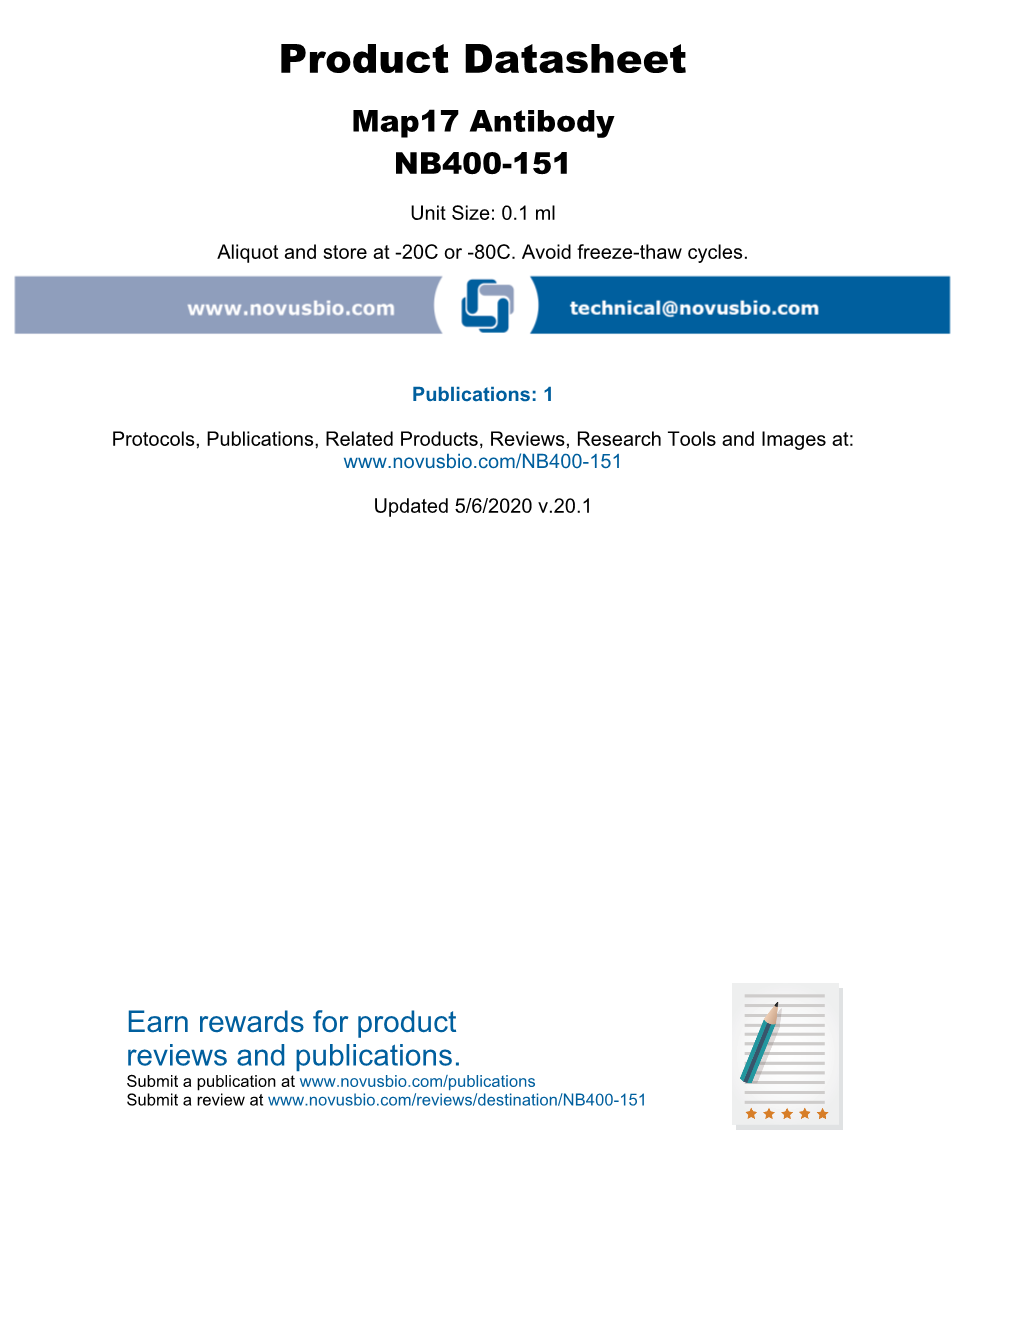 Product Datasheet Map17 Antibody NB400-151